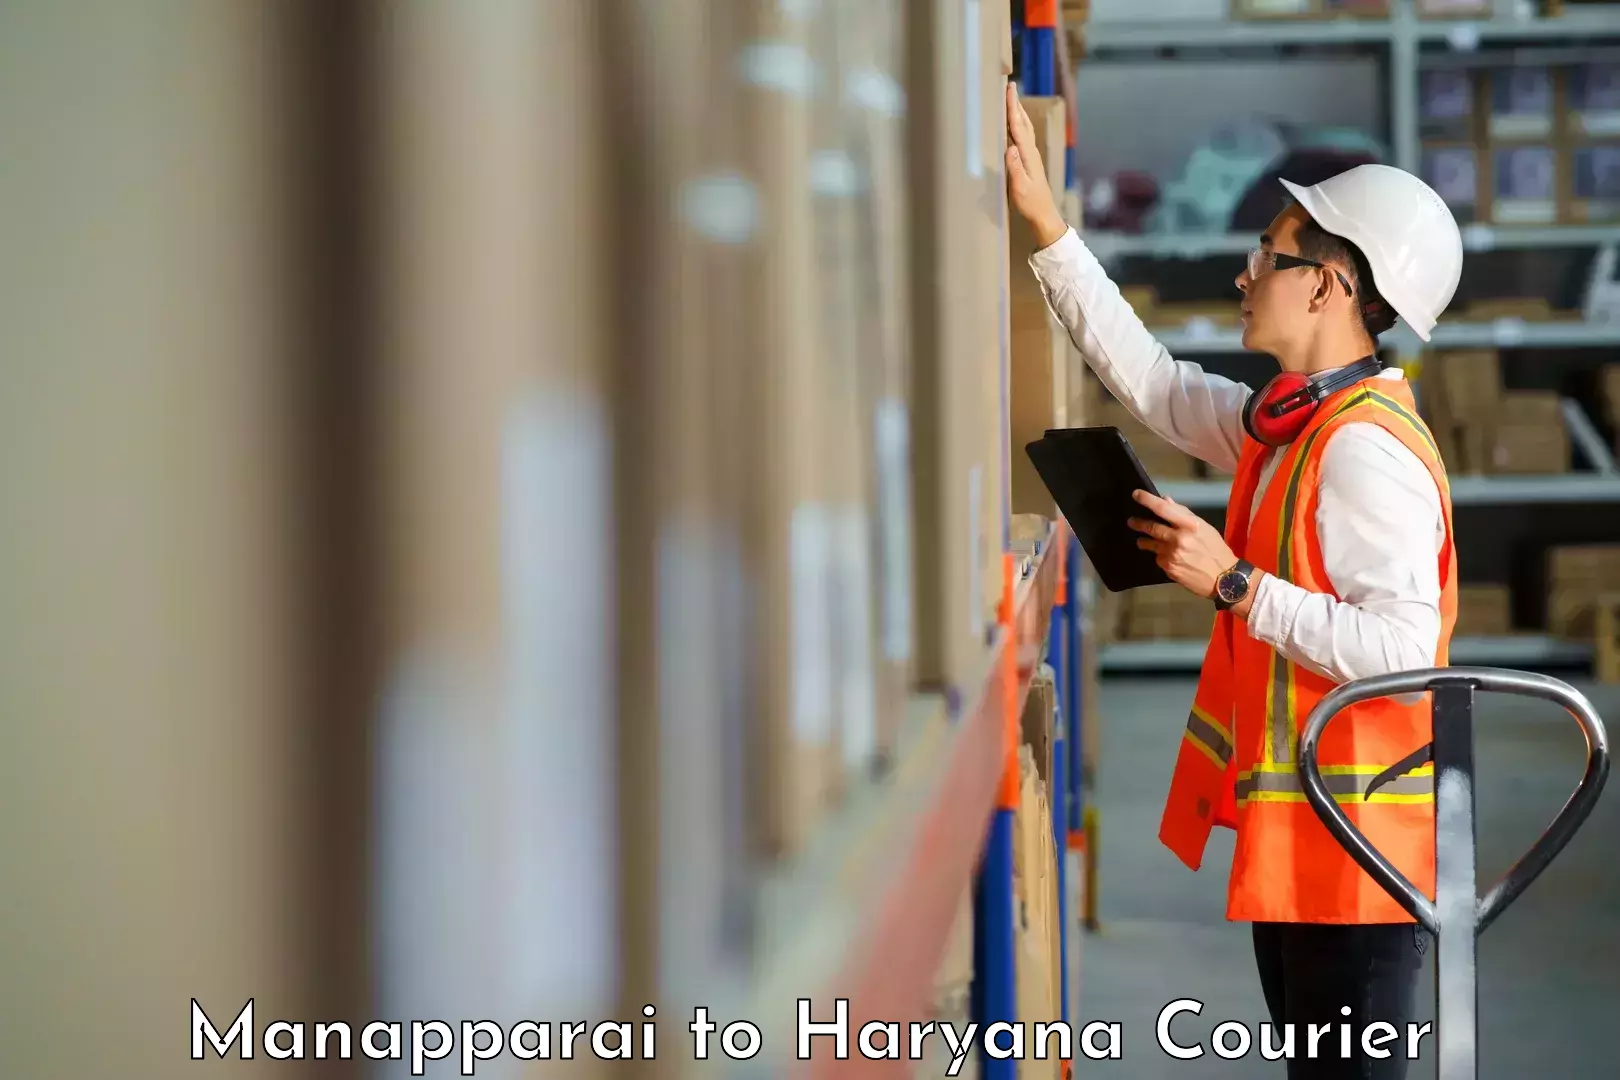 Courier service comparison in Manapparai to Buguda